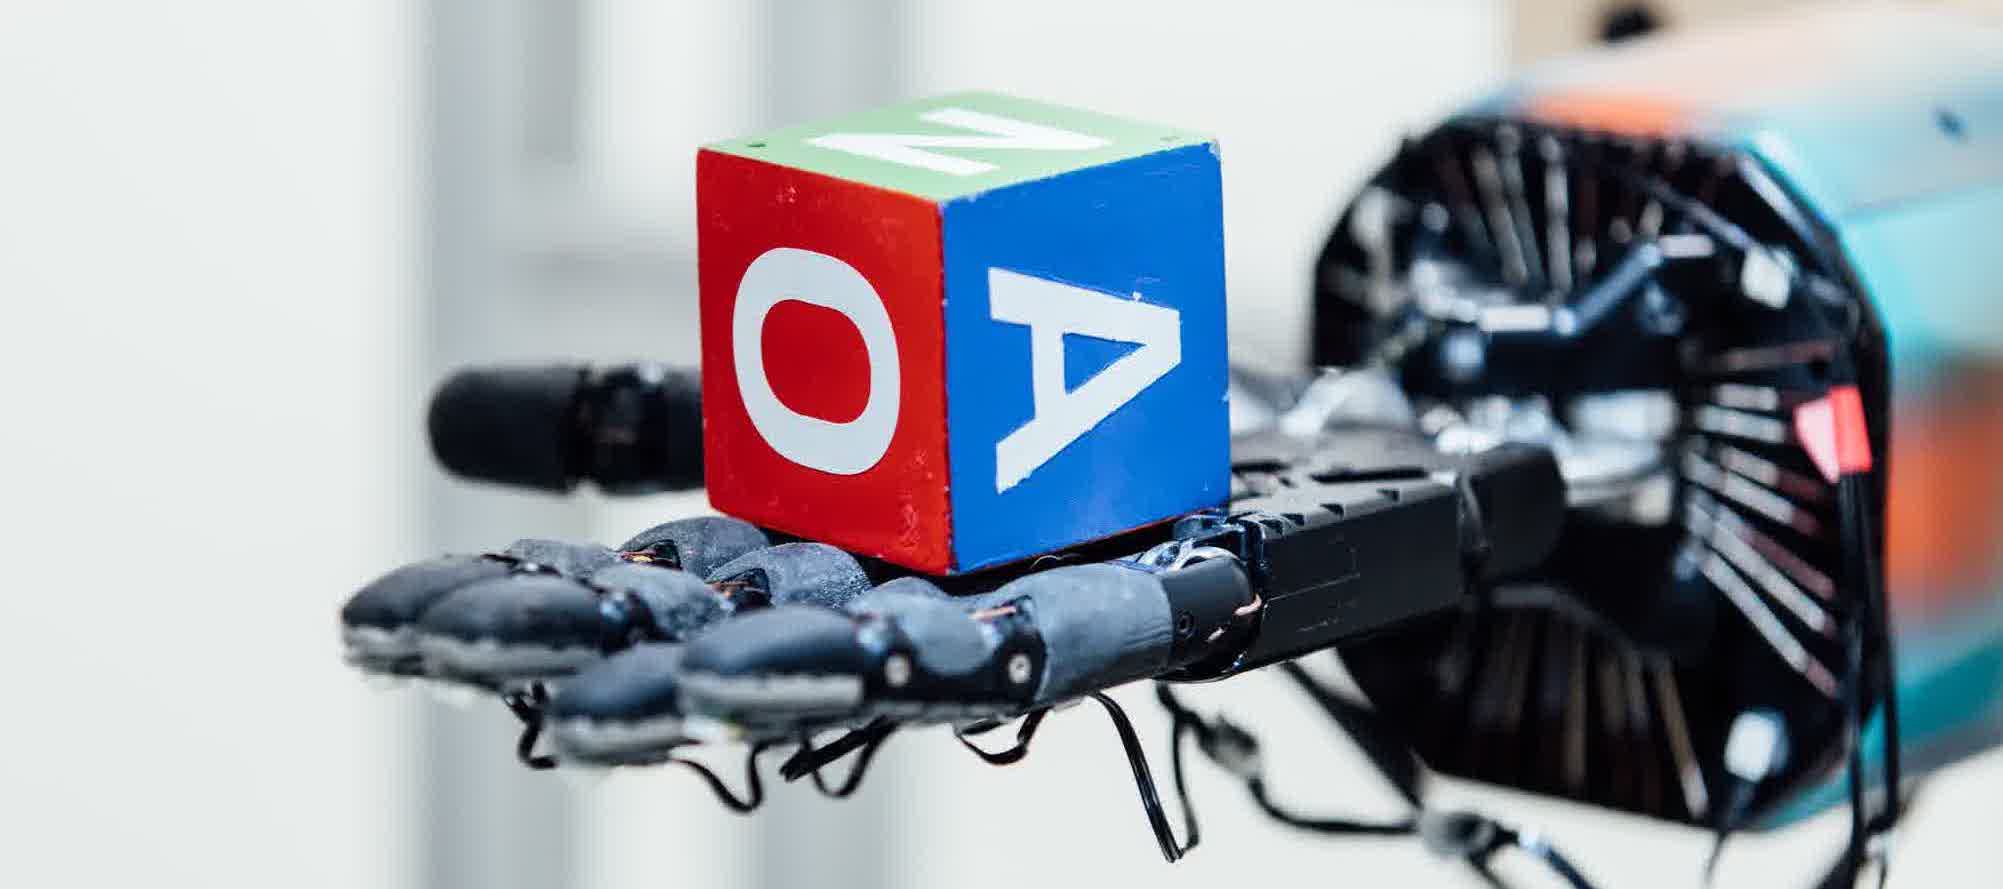 Ρομπότ με τεχνητή νοημοσύνη μιμείται τις ανθρώπινες κινήσεις παίζοντας με έναν κύβο (βίντεο)